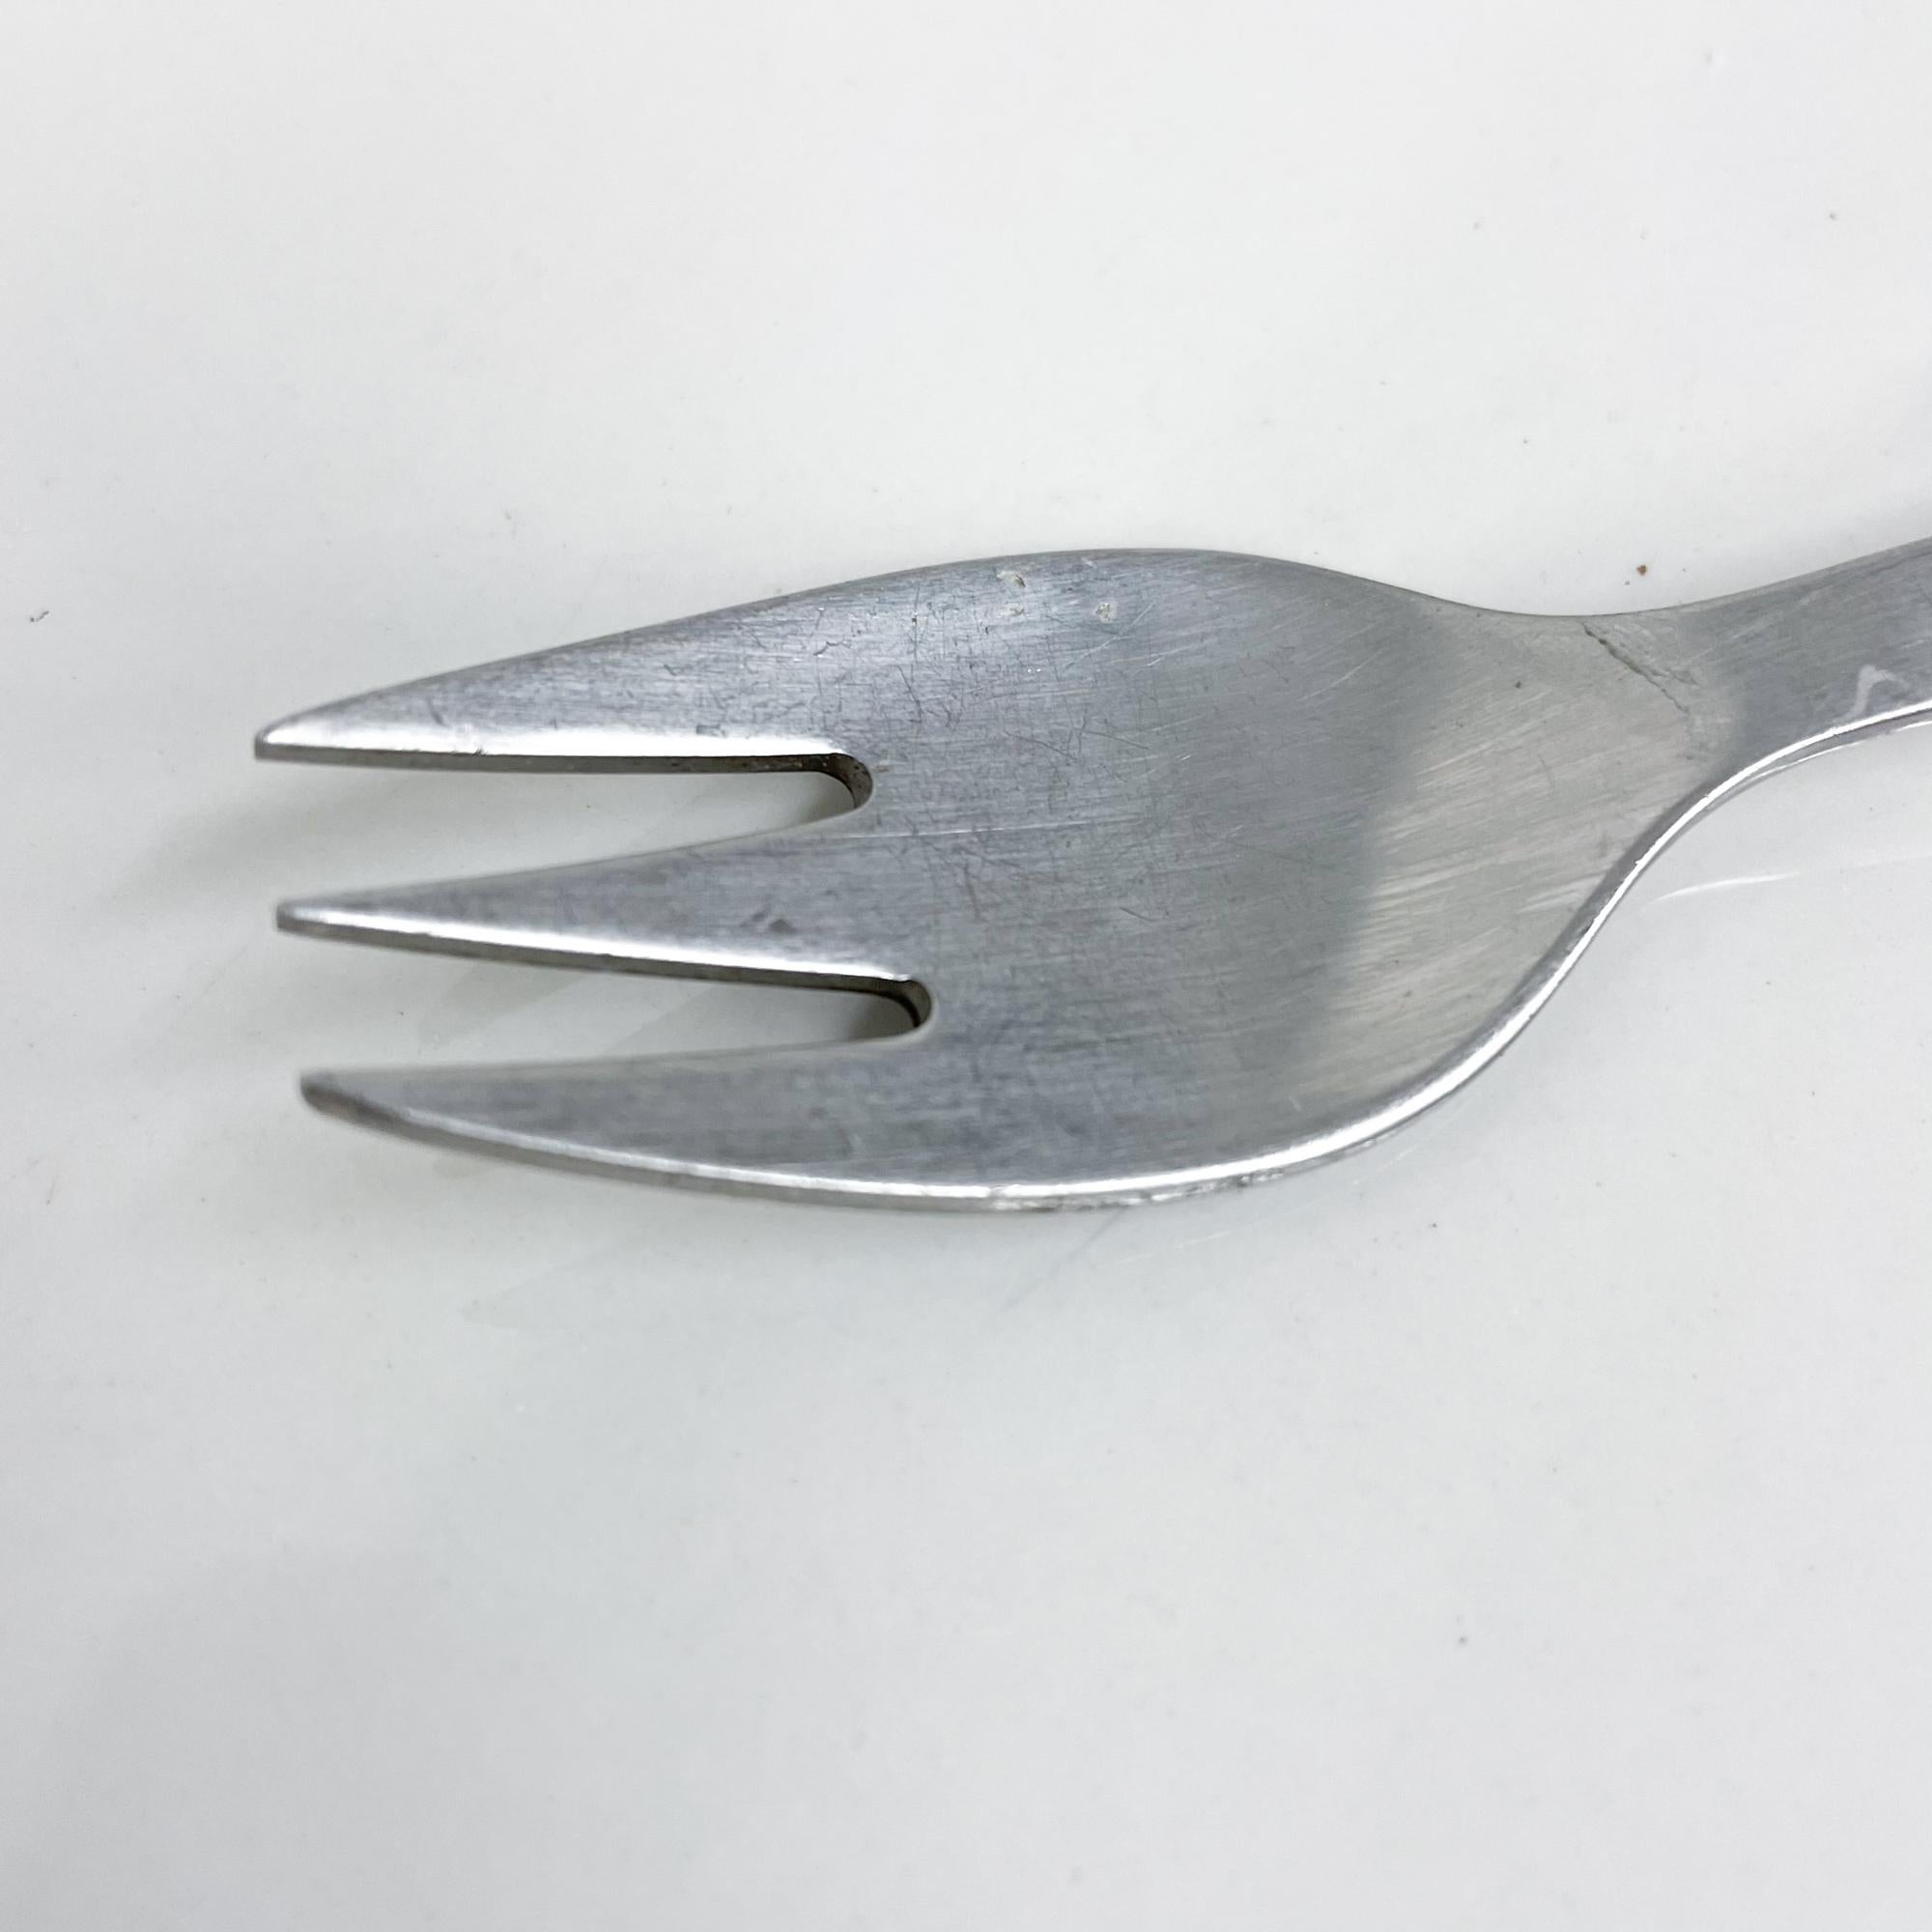 1970s Danish Henning Koppel designer for Georg Jensen Co Pattern is Stratum- black flatware cutlery one small salad fork.
Des lignes modernes et épurées. Acier inoxydable avec poignée en plastique noir
Fabriqué au Danemark, vers les années